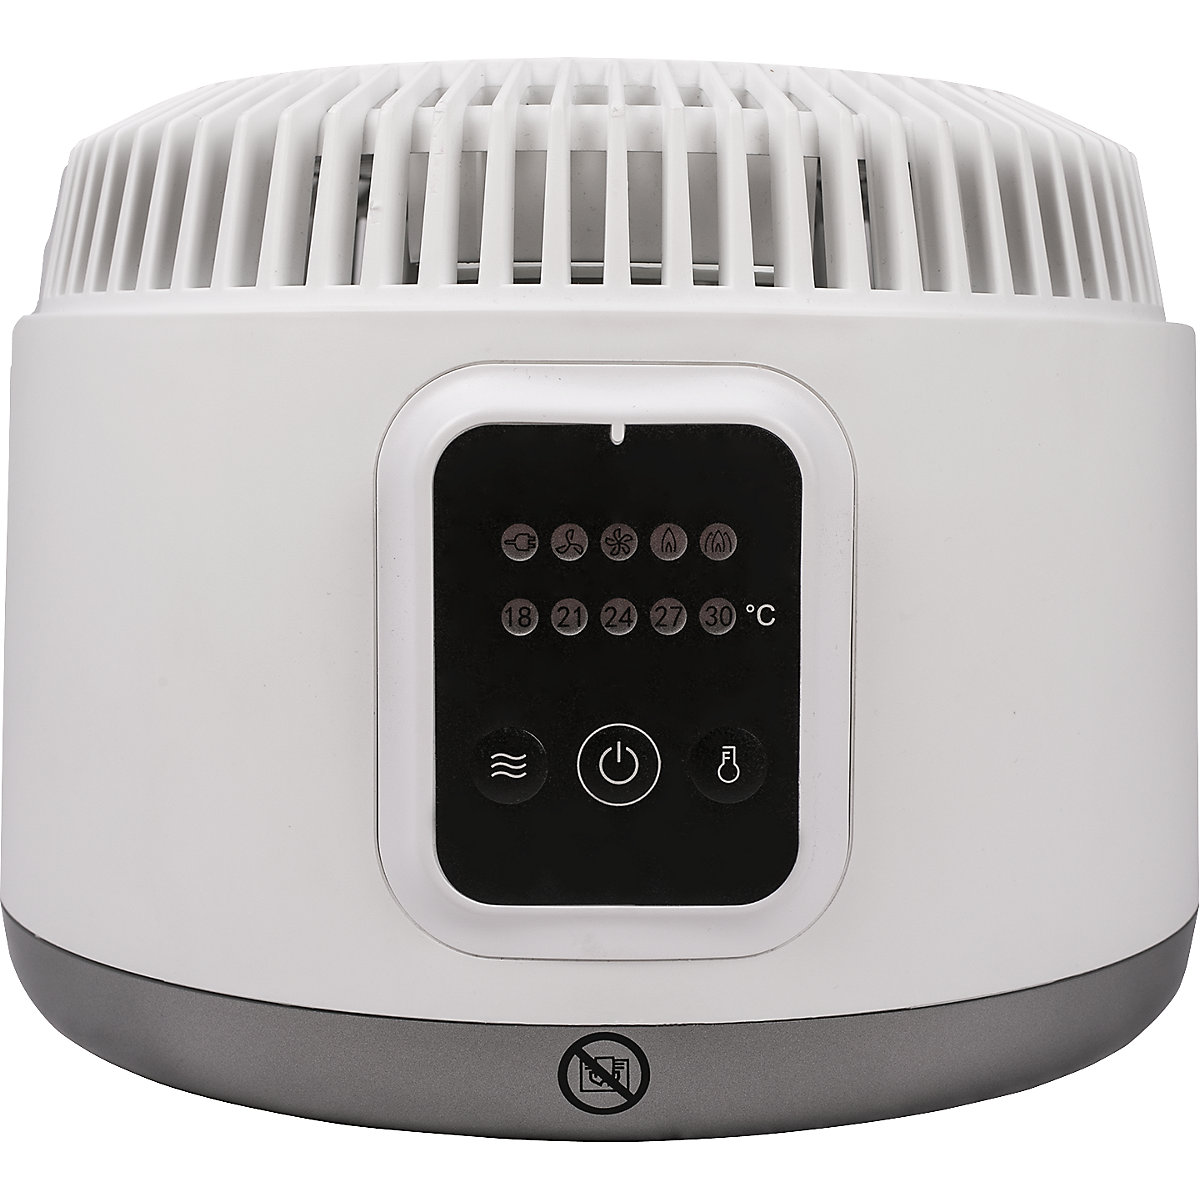 Ventilateur-radiateur soufflant HOT + COLD: h x l x p 275 x 260 x 200 mm